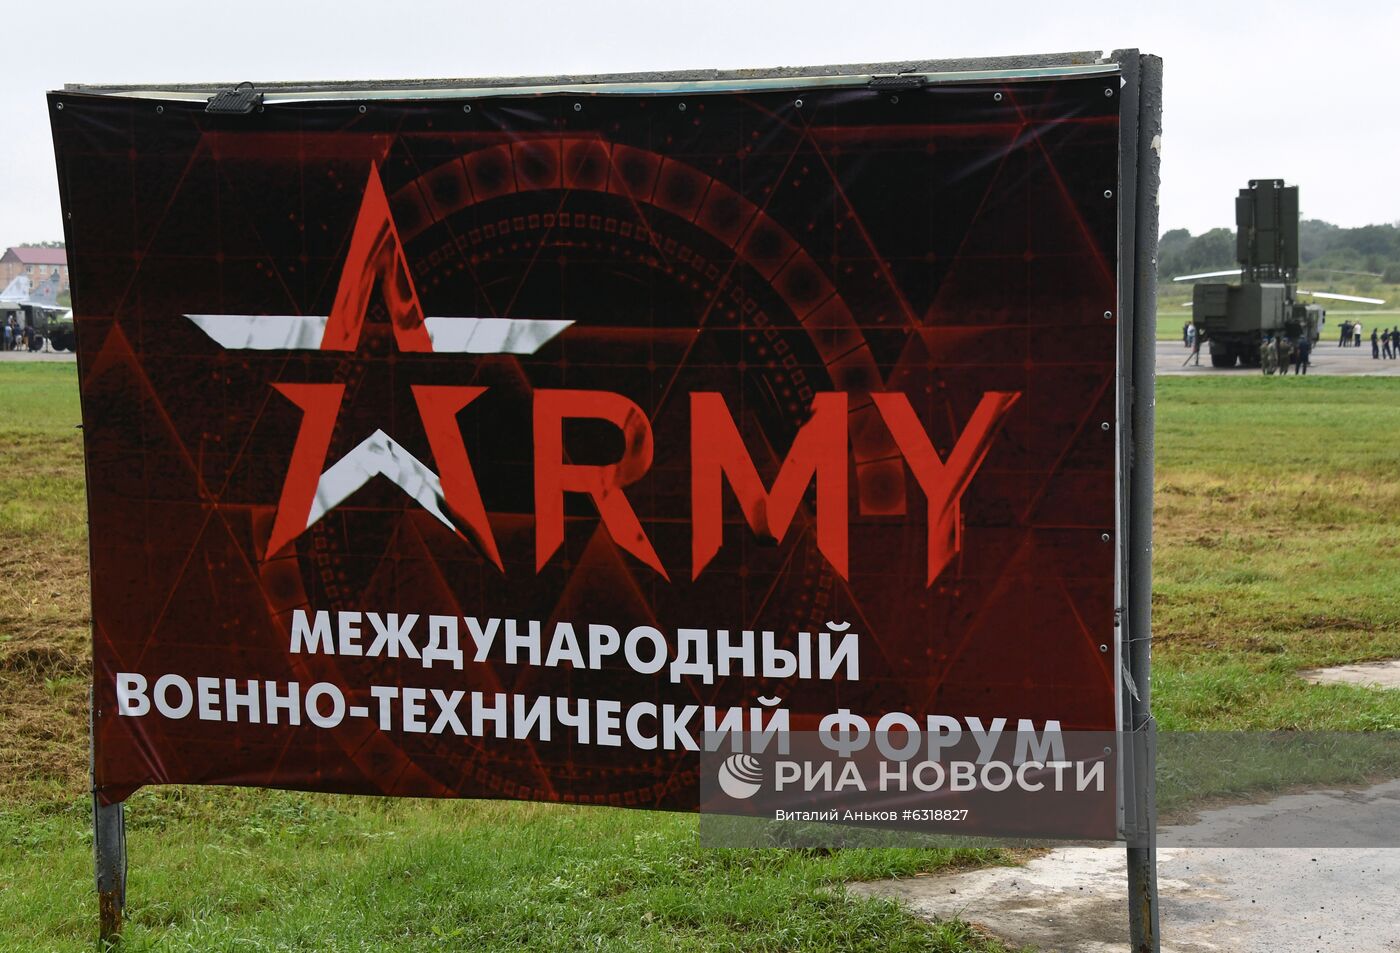 Форум "Армия-2020" во Владивостоке